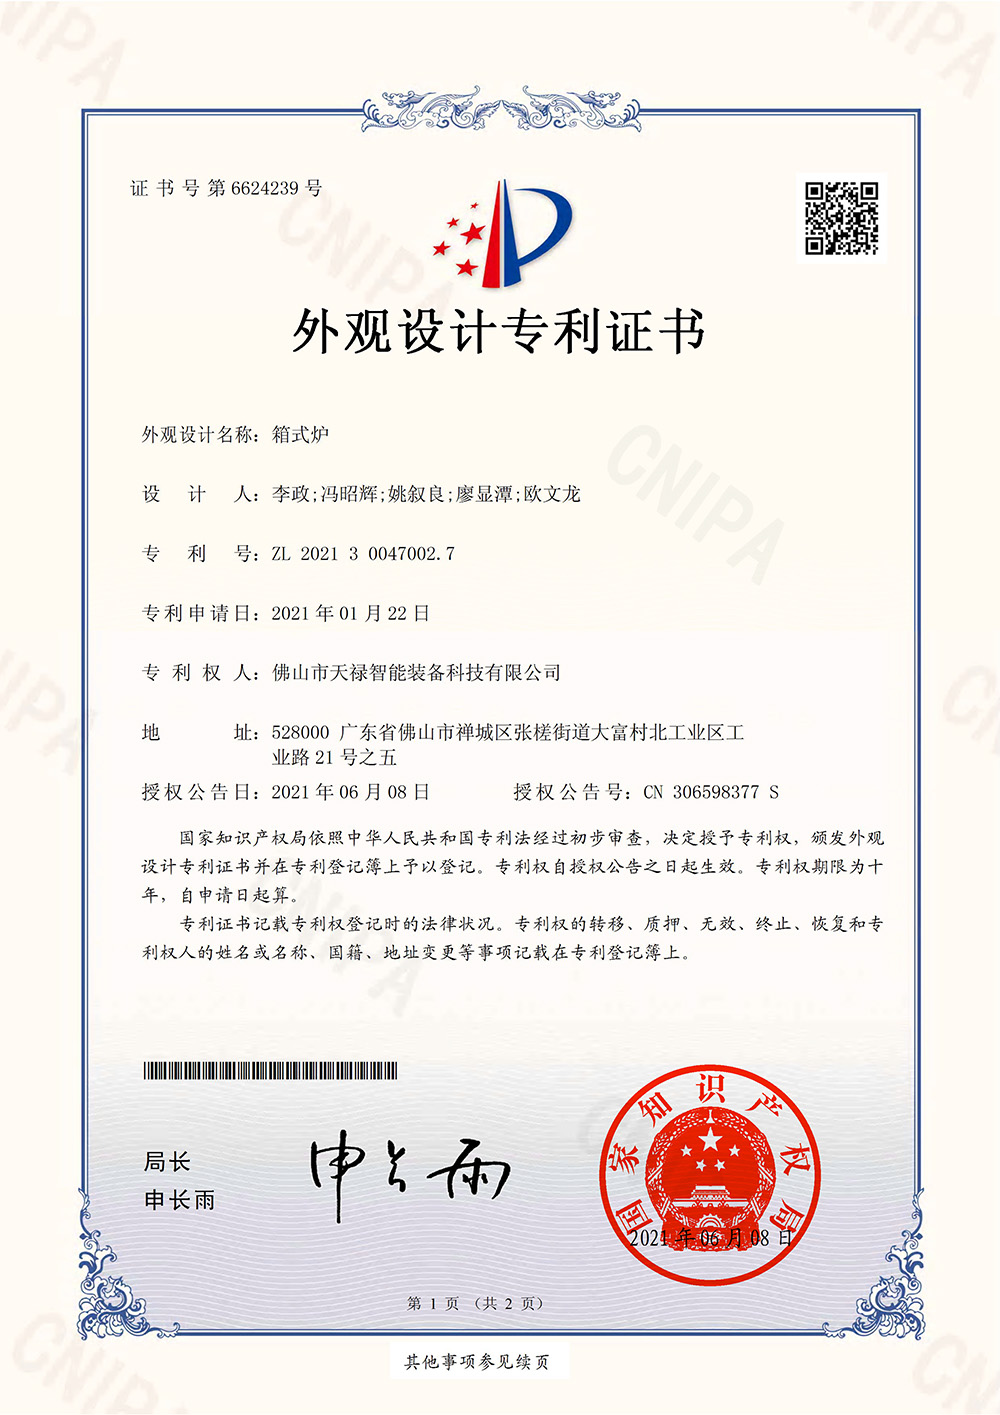 Box furnace design license certificate (signature)